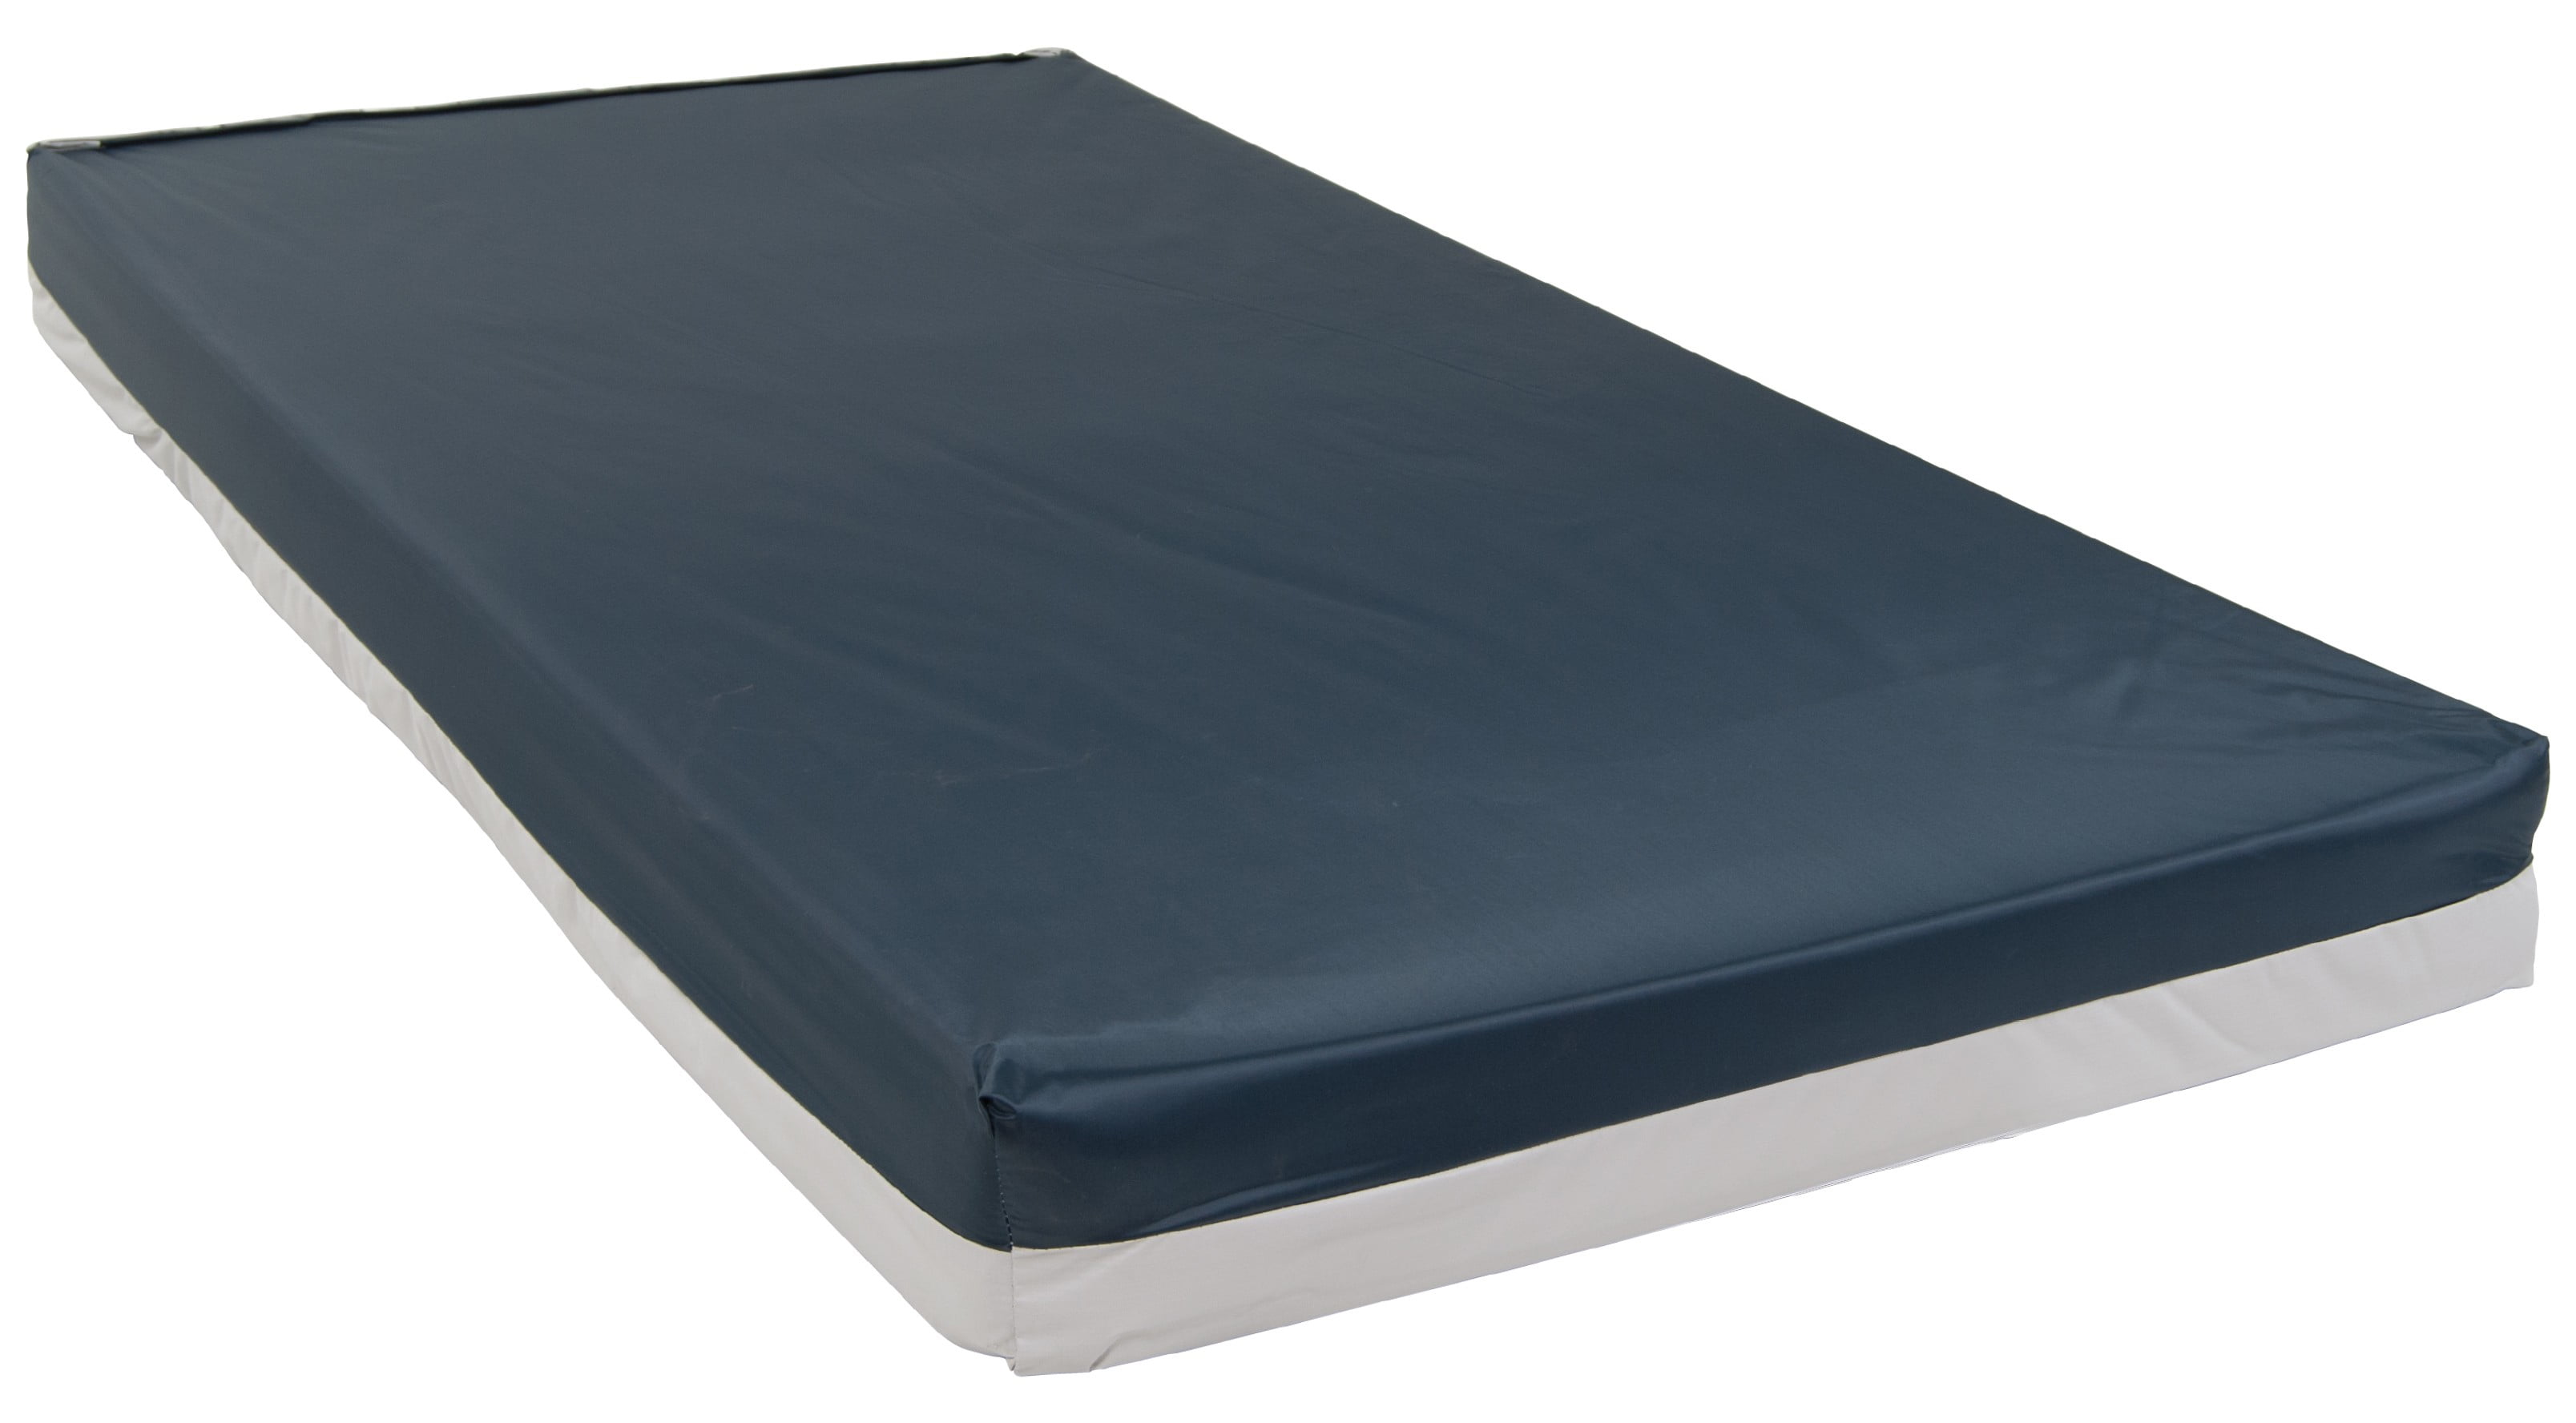 48 inch wide mattress xl